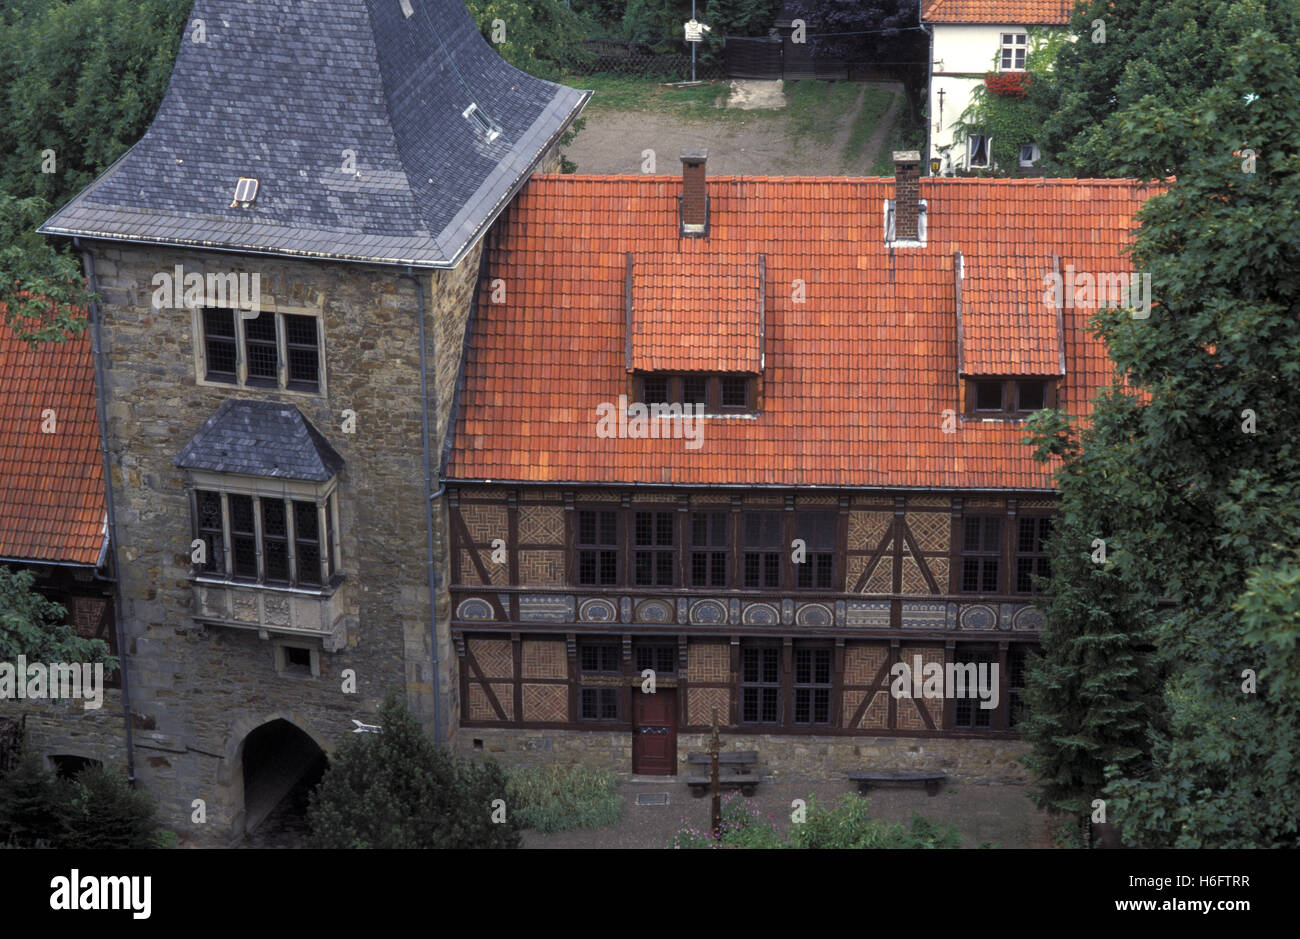 Alemania, Baja Sajonia, Rinteln, castillo de Schaumburg. Foto de stock